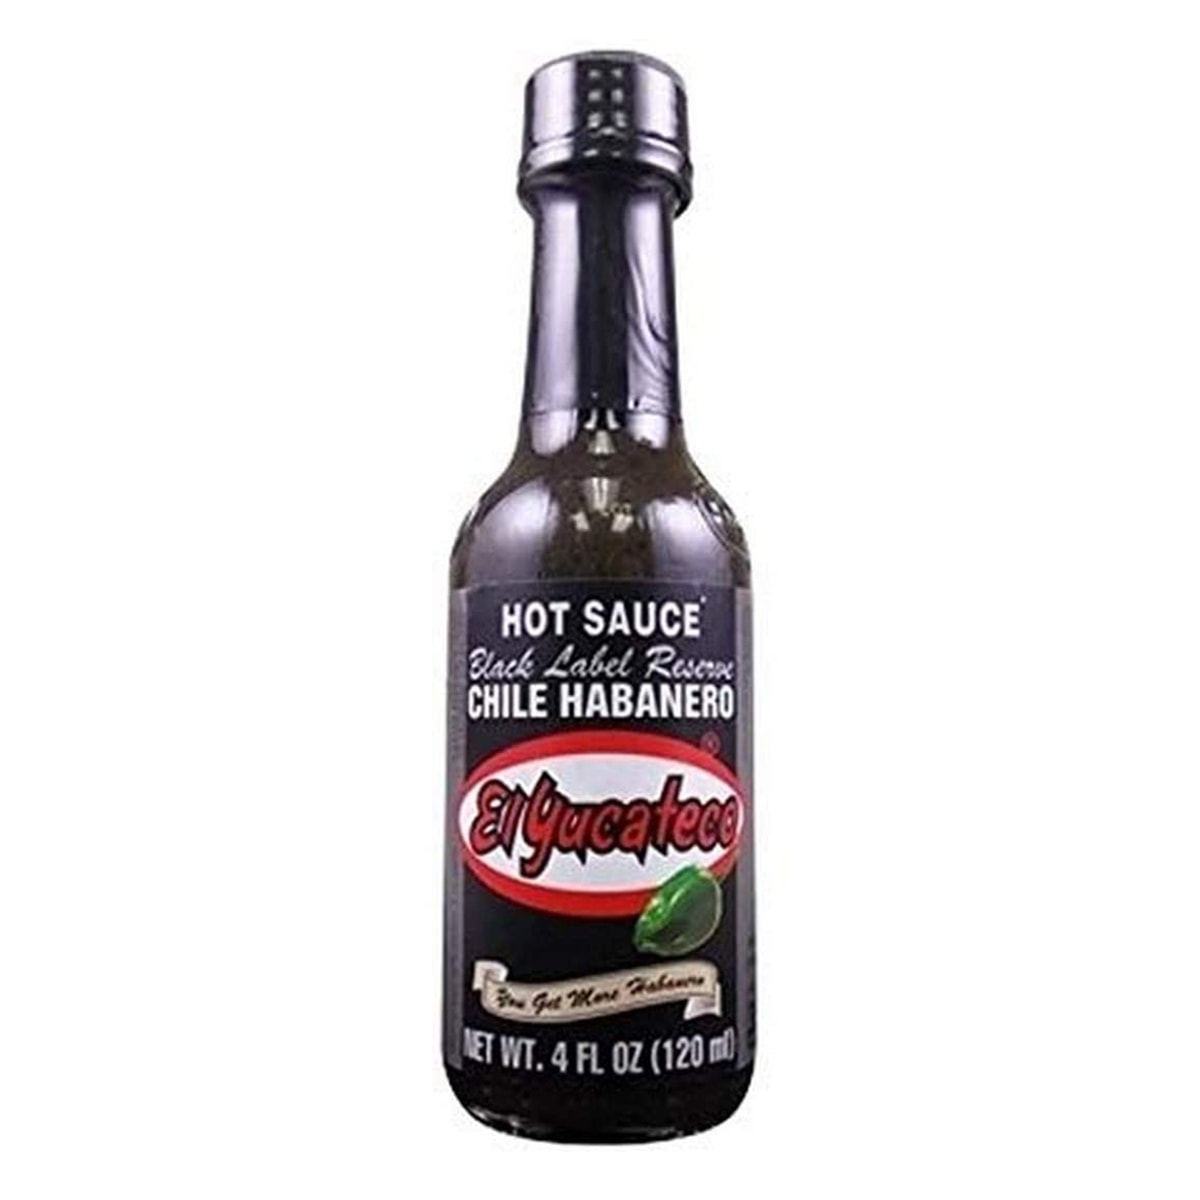 Buy El Yucateco Caribbean Hot Sauce Salsa Picante De Chile Habanero - 120 ml